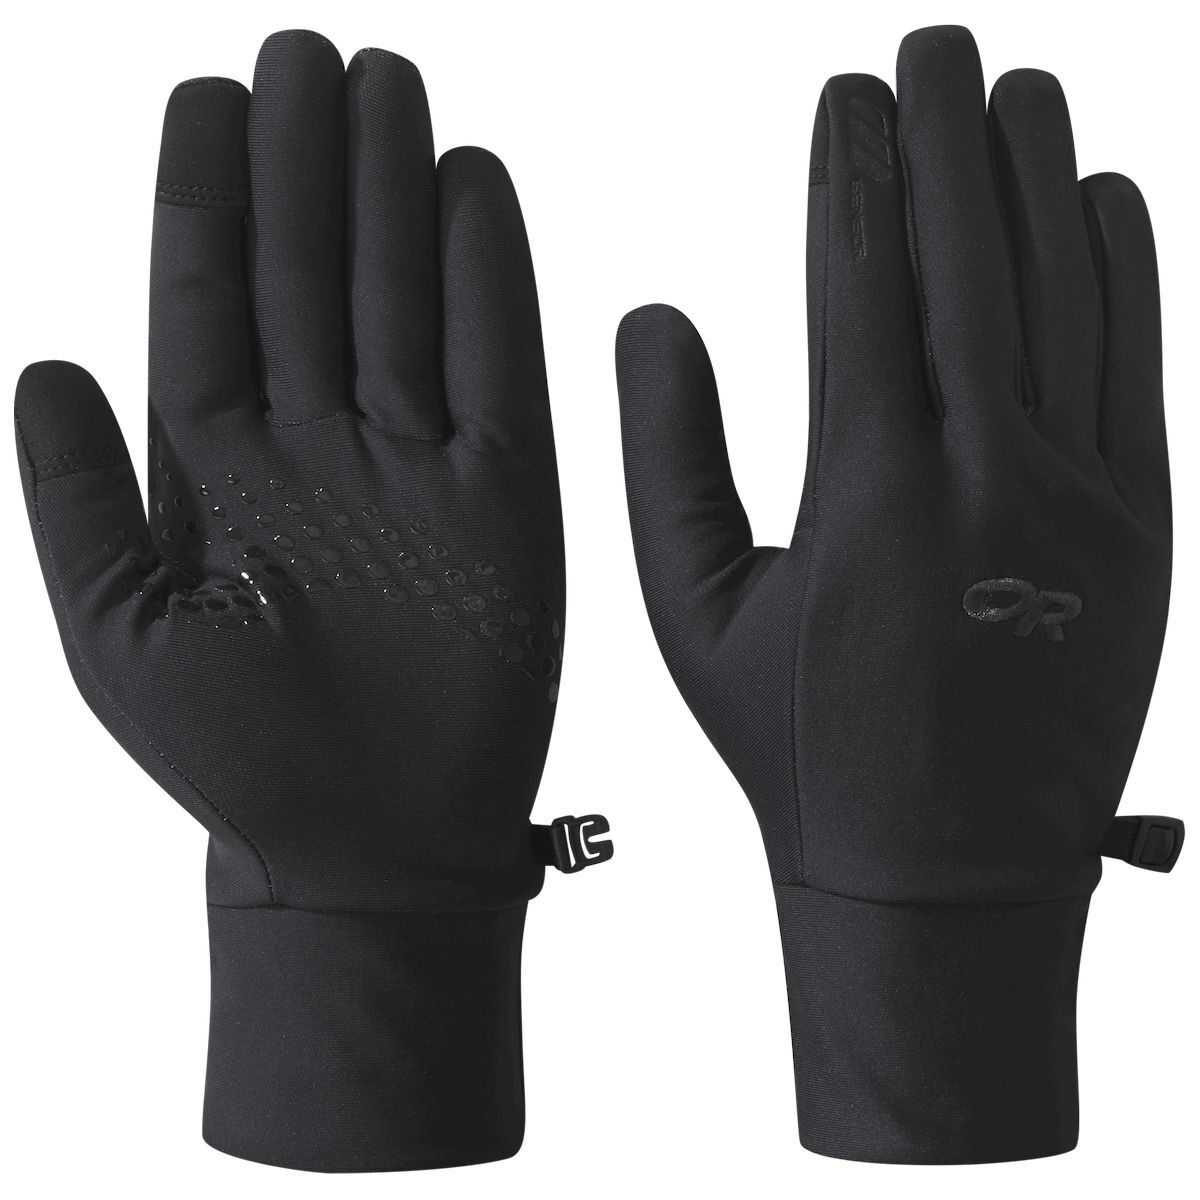 Outdoor Research Vigor Lightweight Sensor Gloves - Handskar